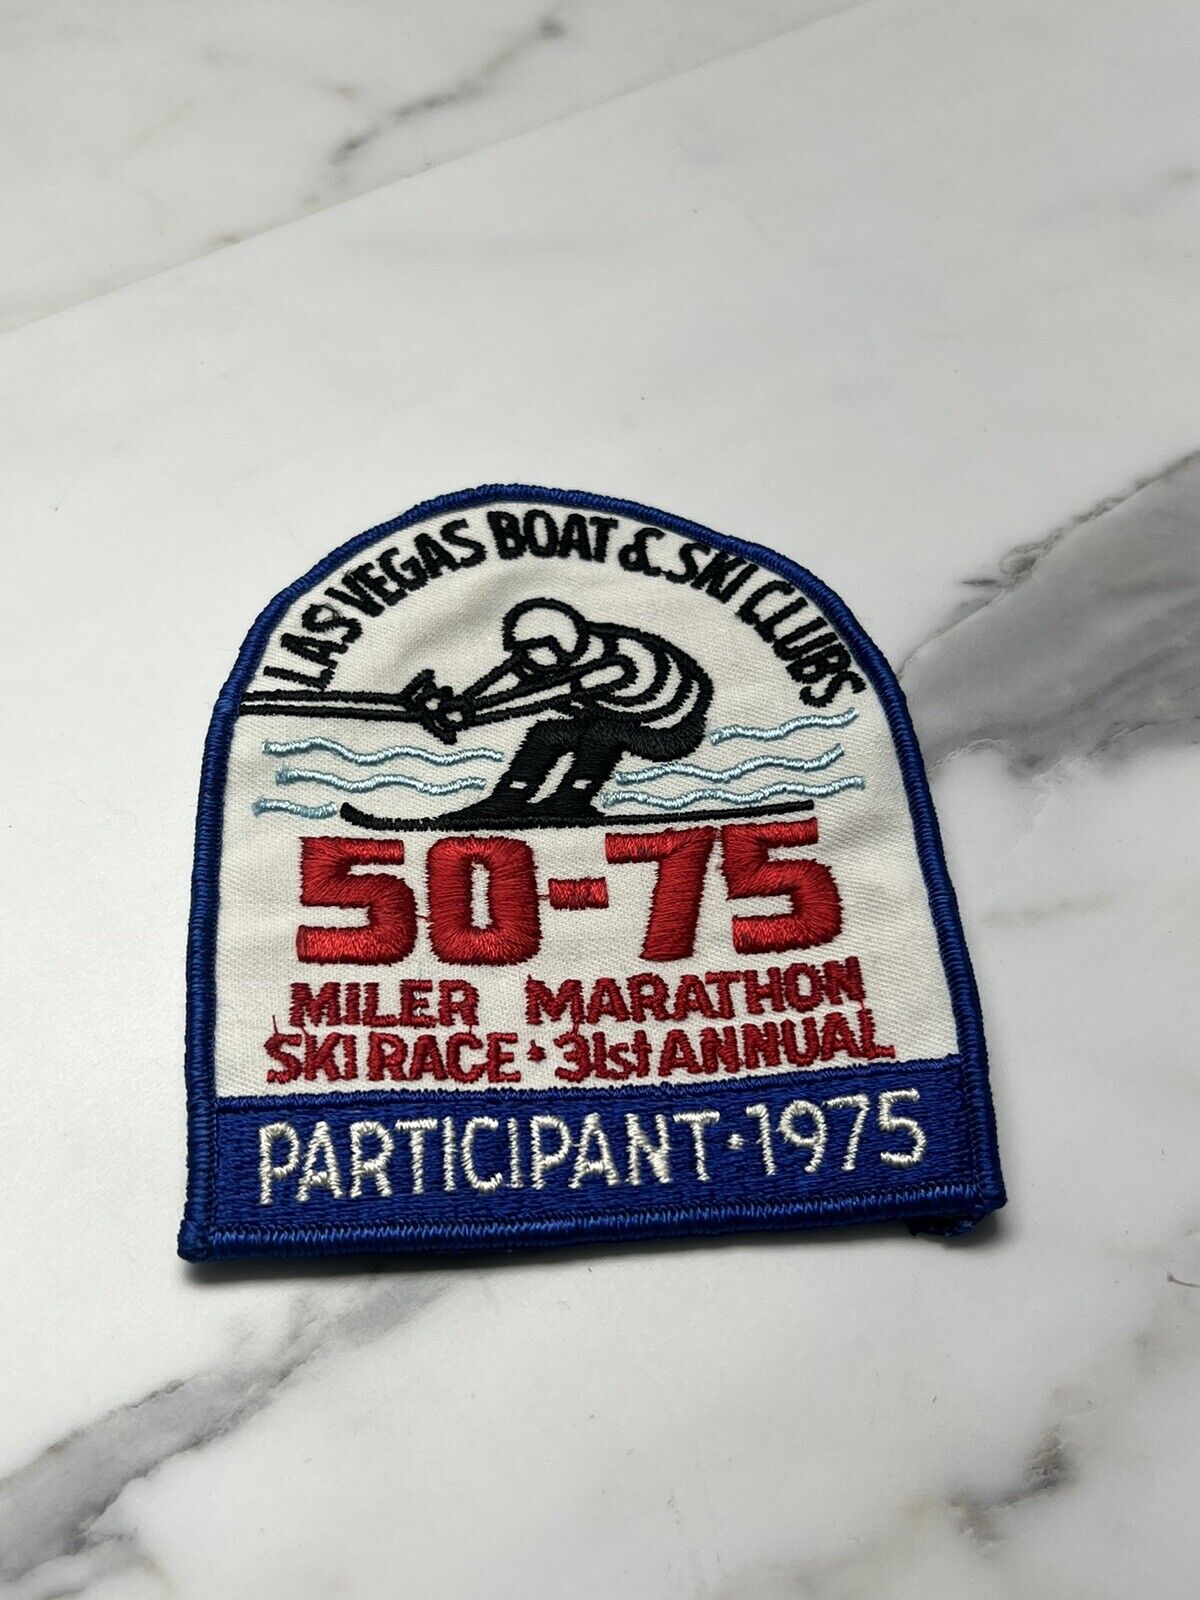 1975 Vintage Las Vegas Boat & Ski Club Patch 50 & 75 Mile Race Marathon 31st